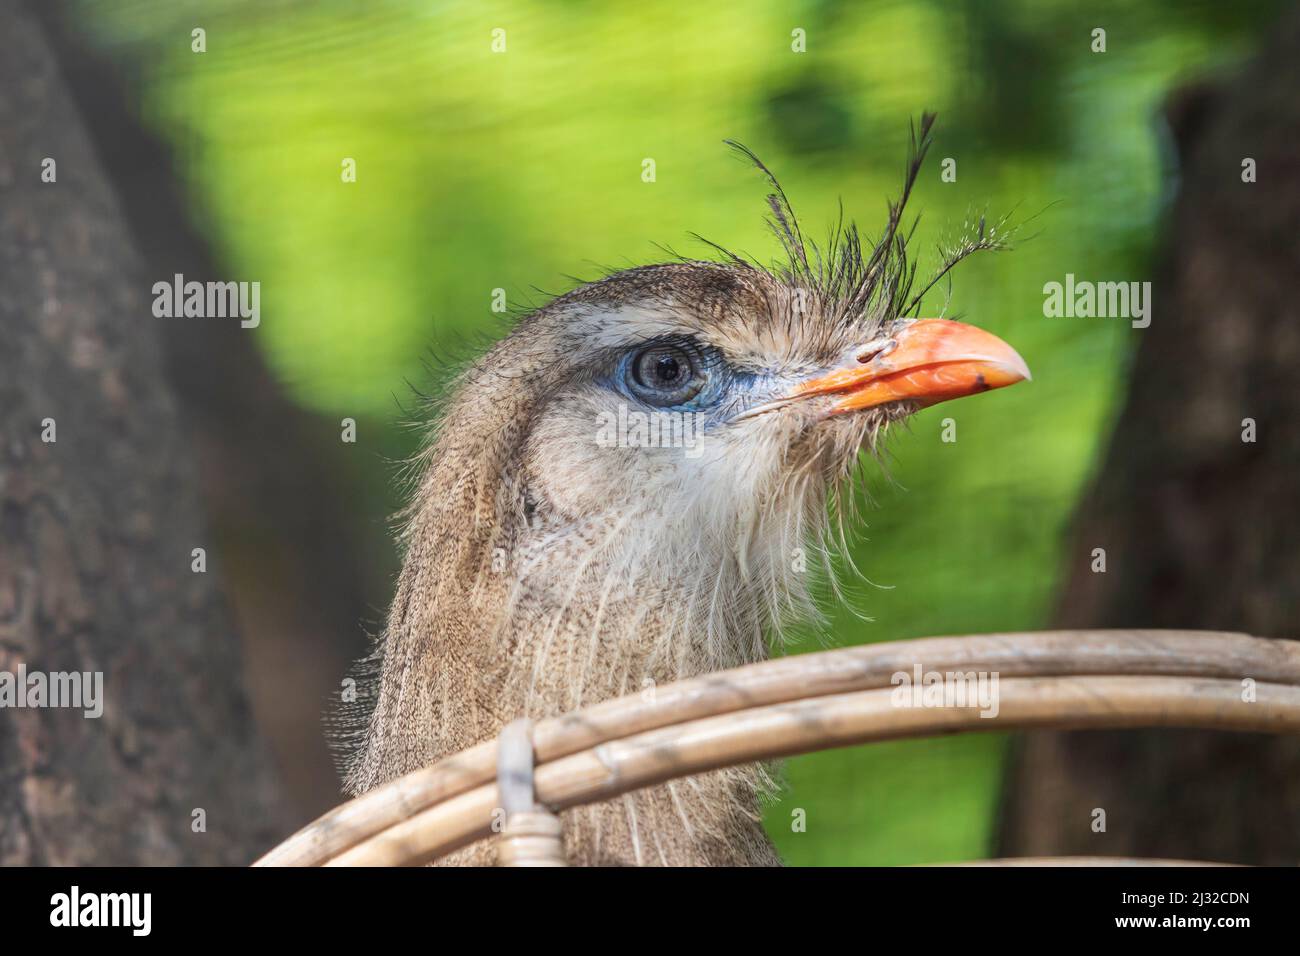 Ritratto di un uccello Seriema con fattura rossa seduto su un nido. Lo sfondo è bello bokeh. Foto Stock